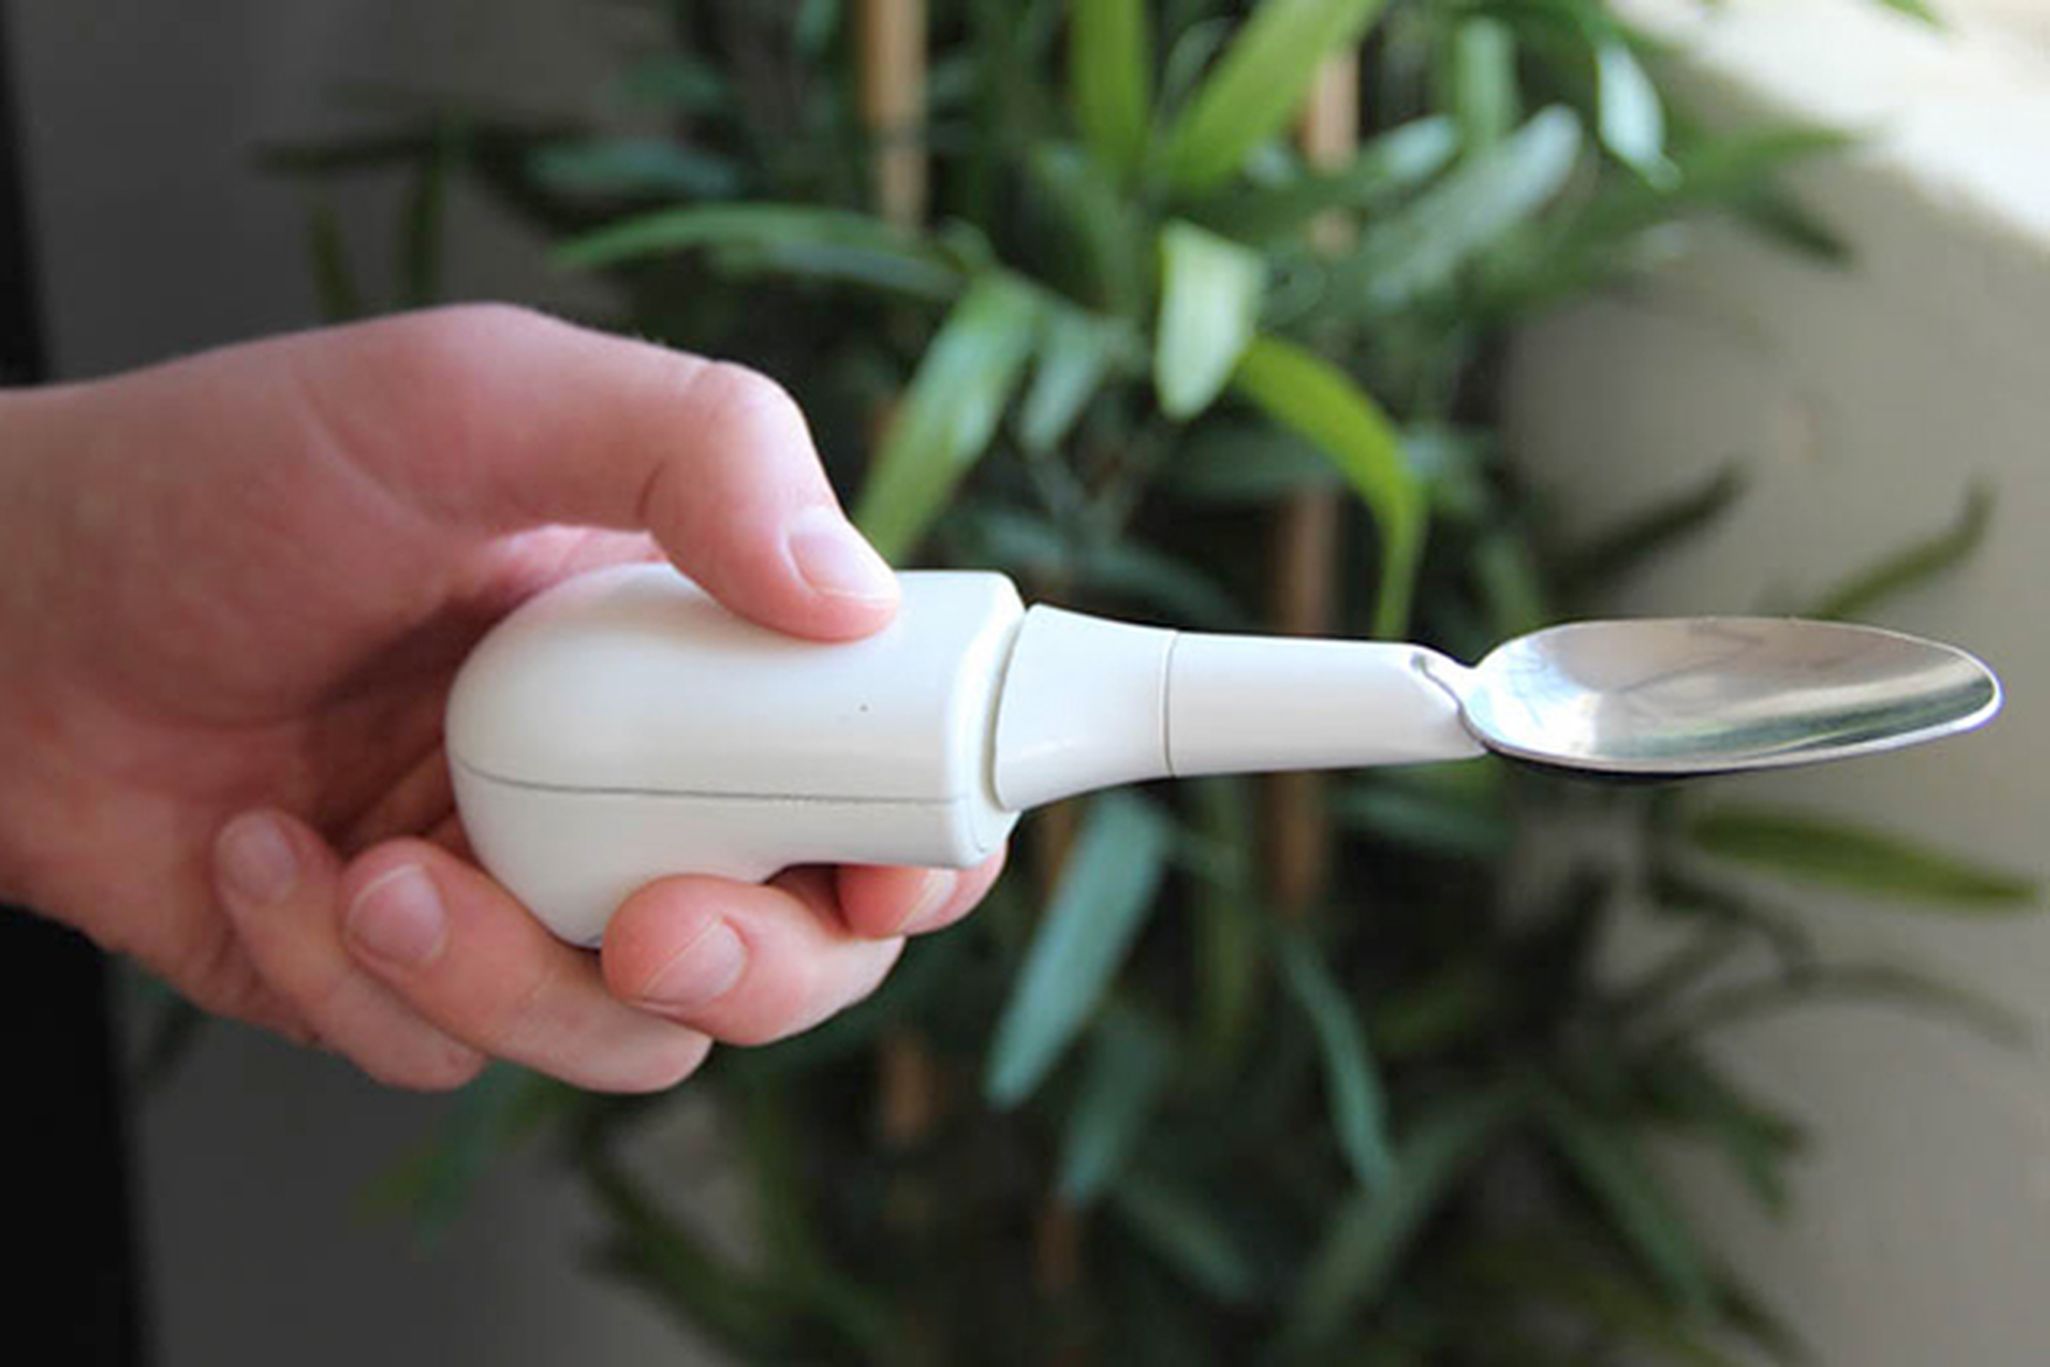 Liftware spoon helps Parkinson